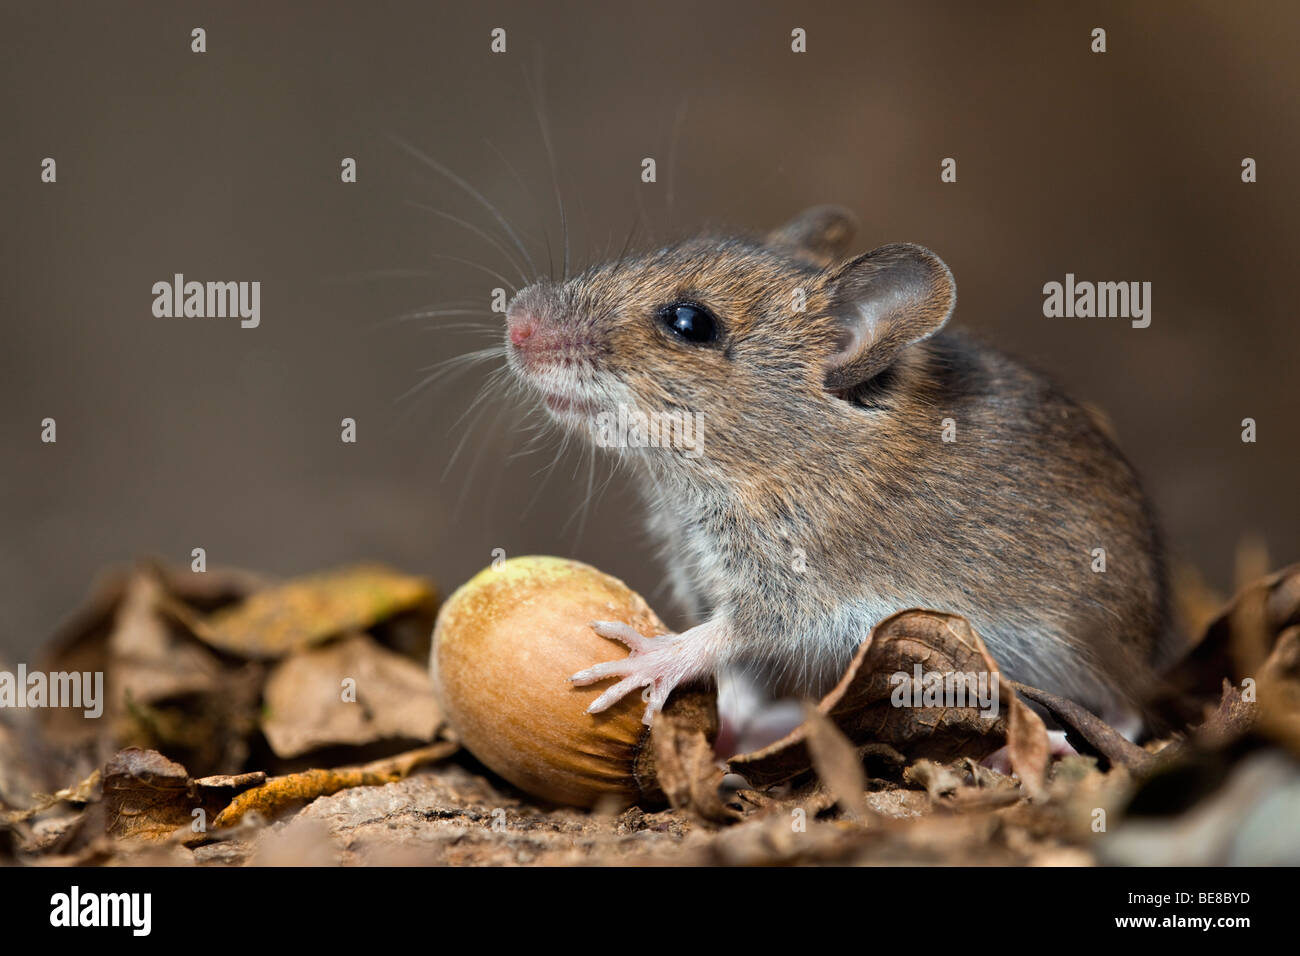 Apodemus sylvaticus ratón; madera; con avellana Foto de stock